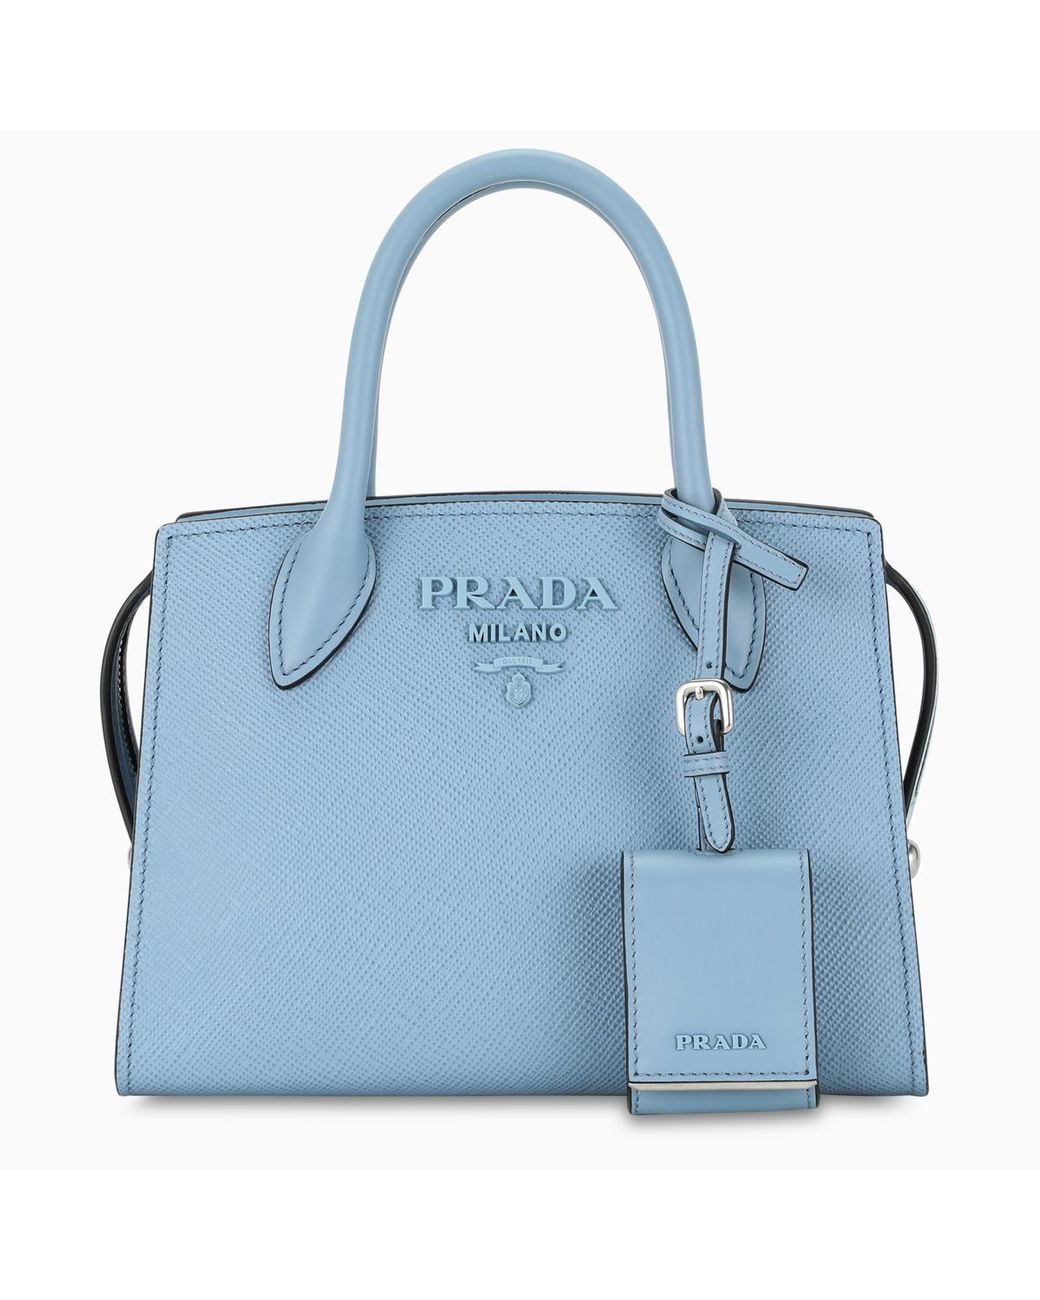 Prada Light-blue Monochrome Bag